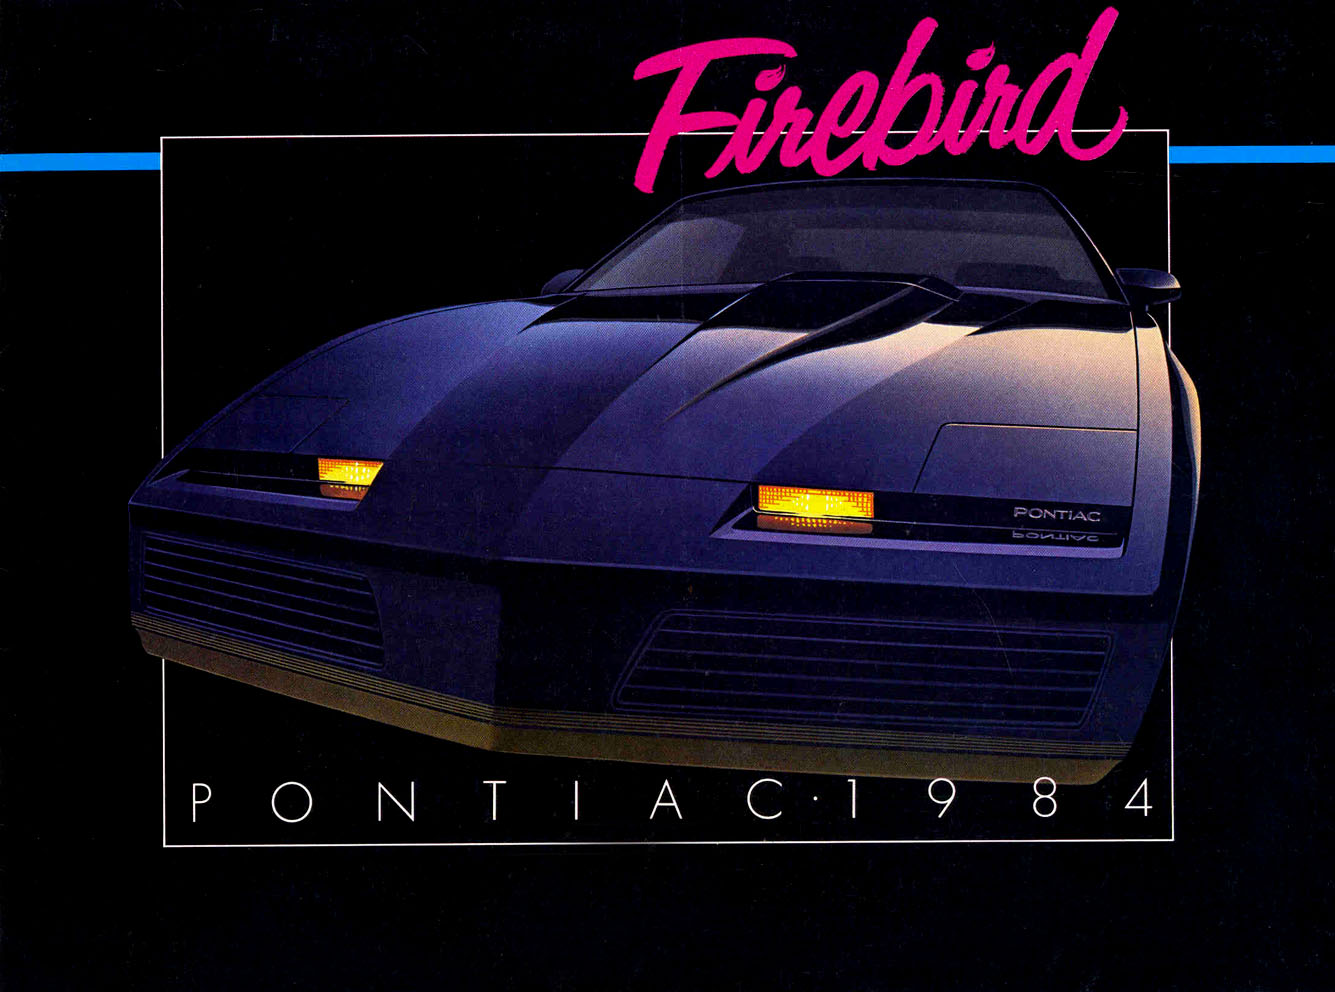 n_1984 Pontiac Firebird-01.jpg